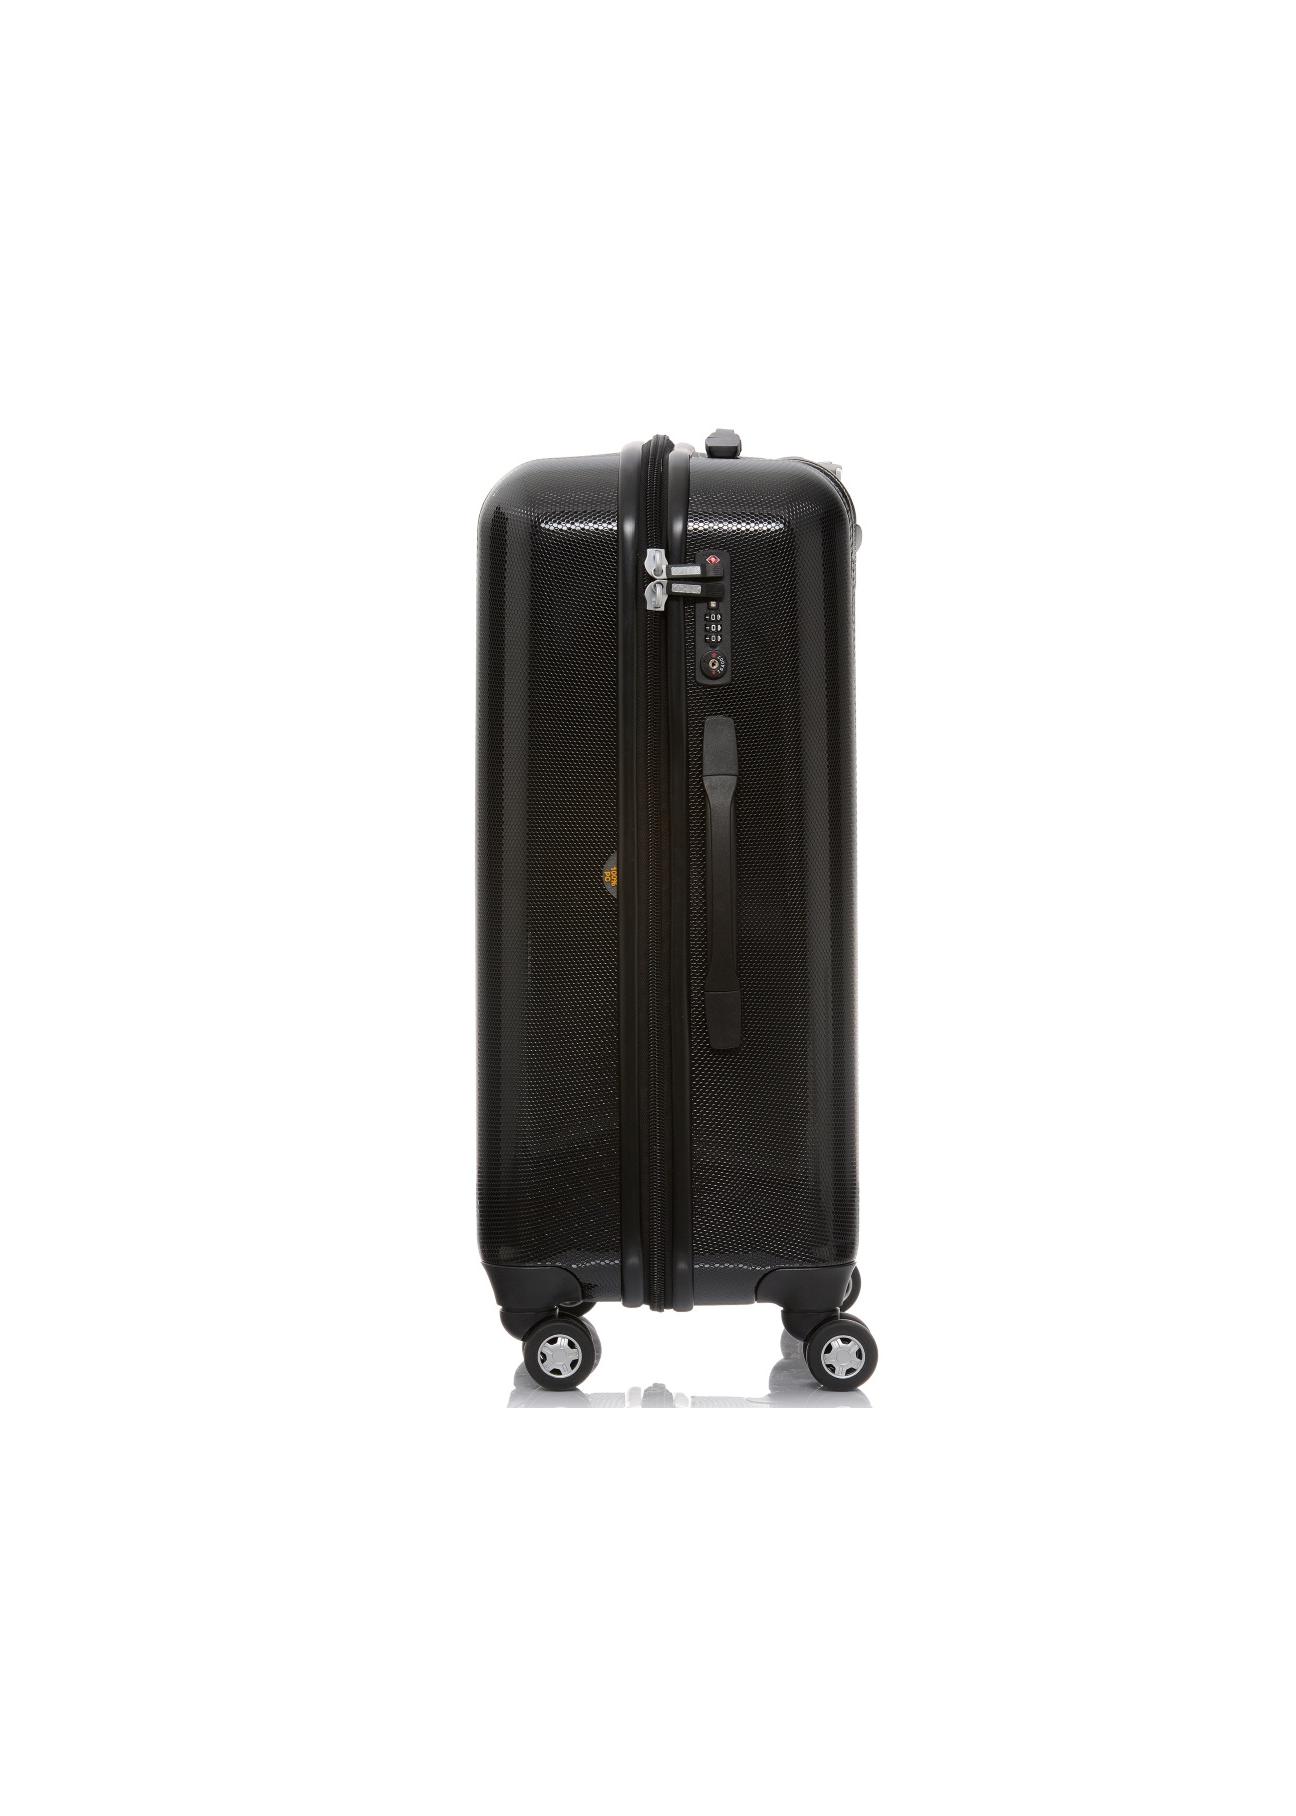 Średnia walizka na kółkach WALPC-0003-99-24